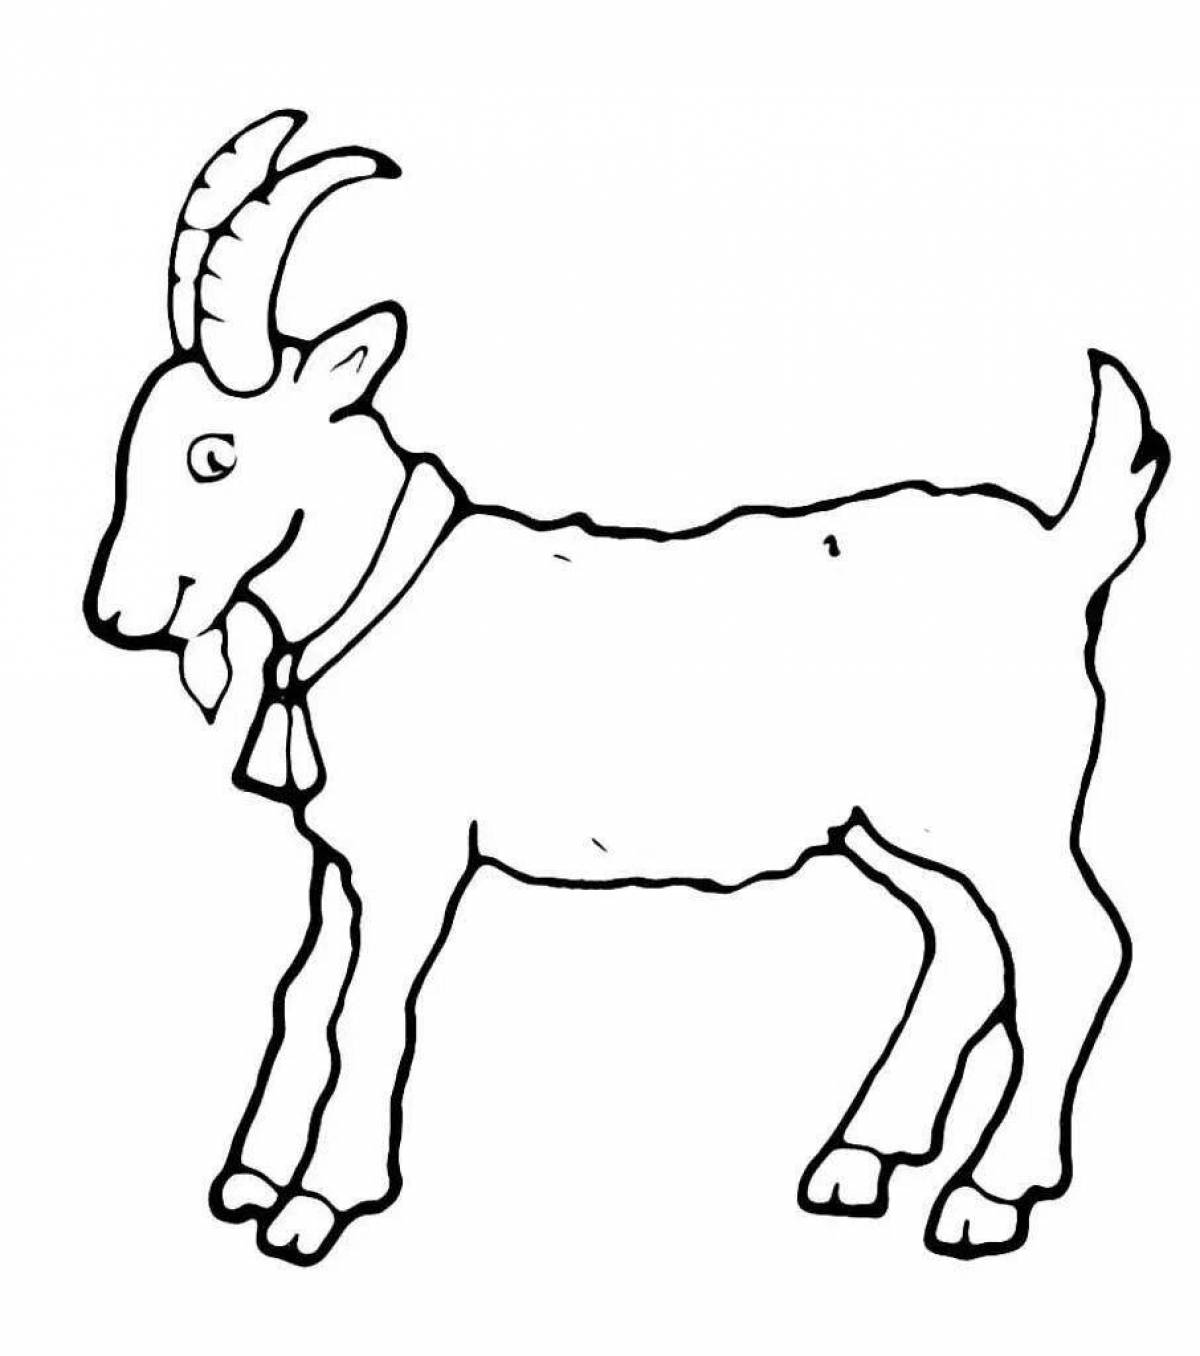 Игривая страница раскраски коз для детей